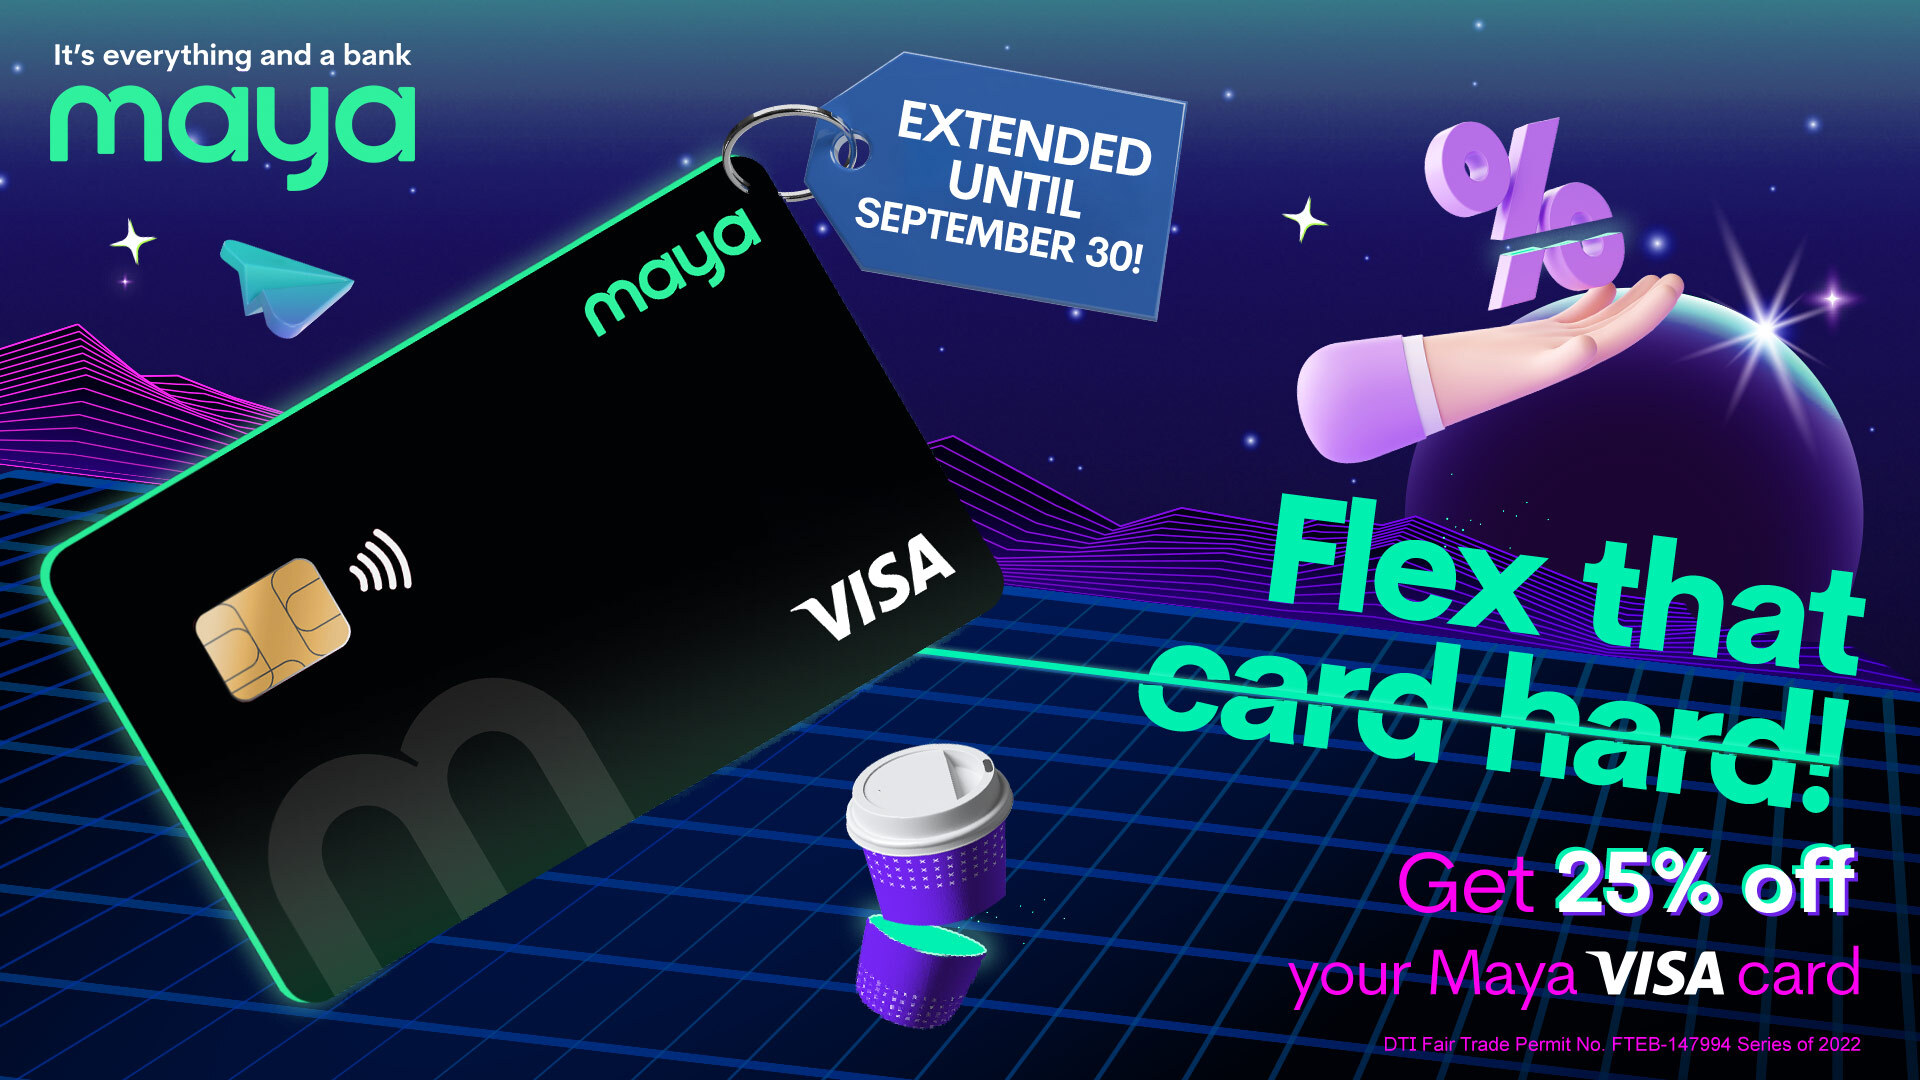 Purchase the new Maya Visa Physical Card at 25% OFF!